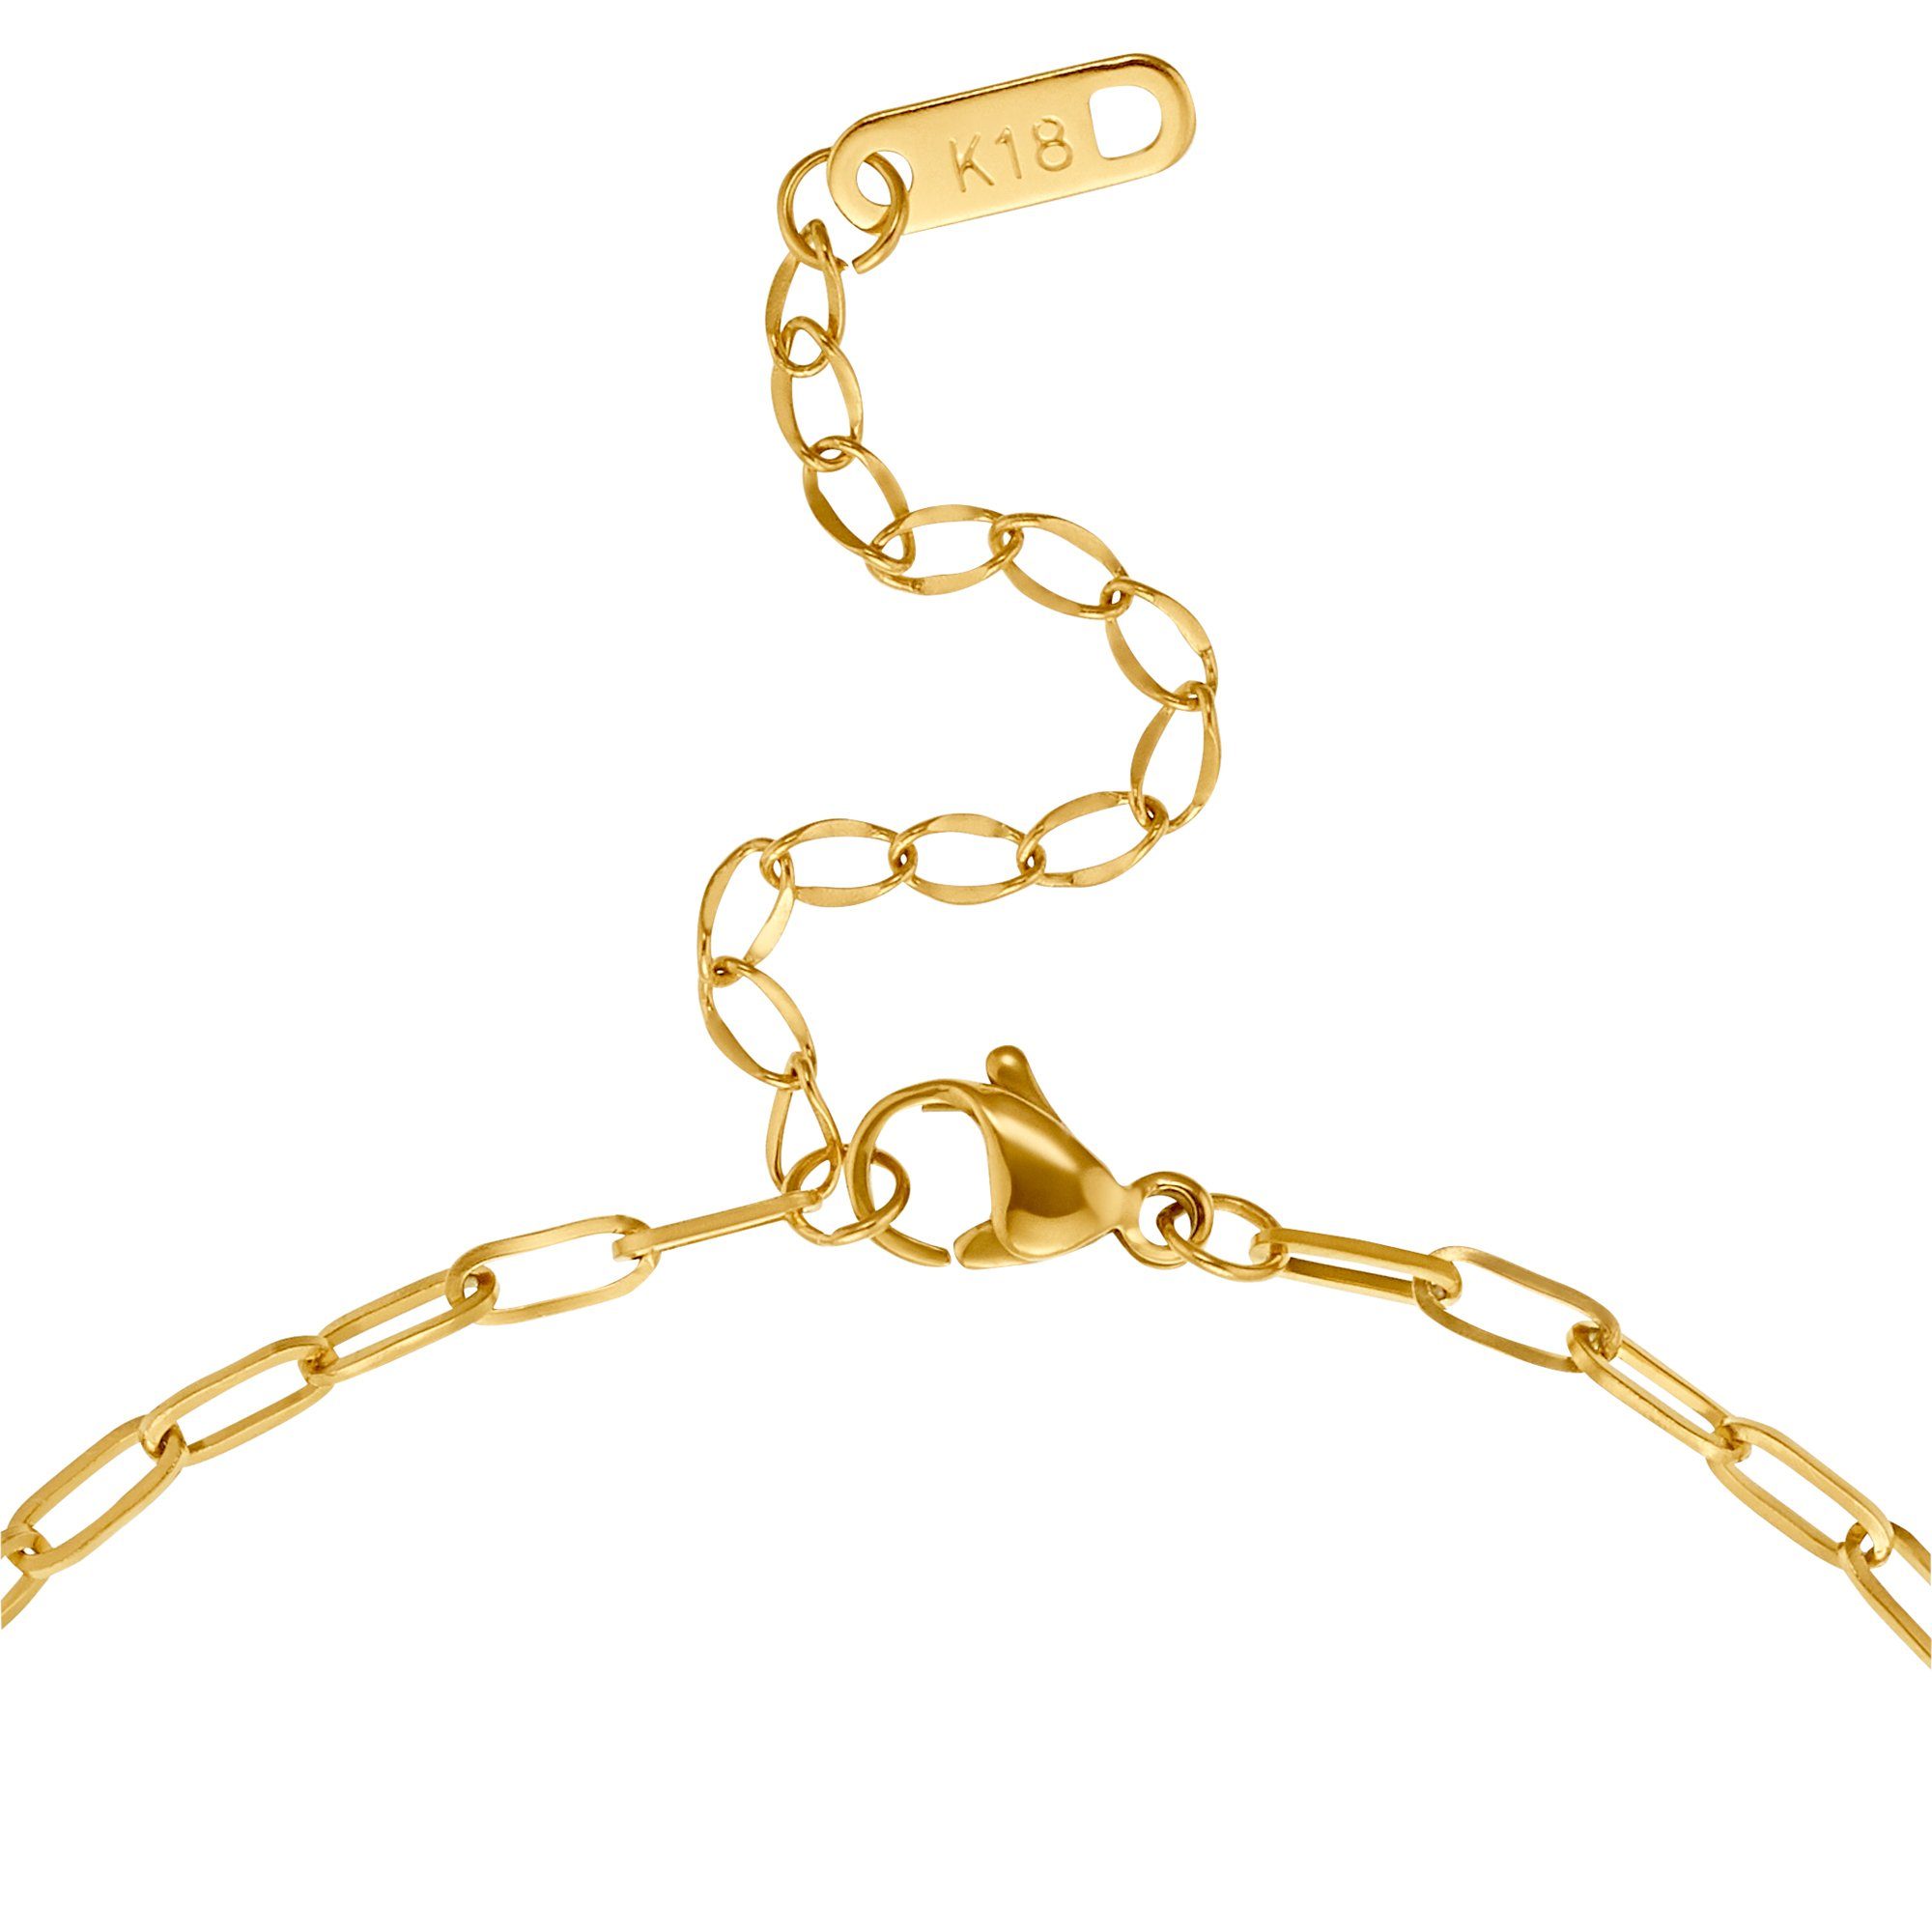 Heideman Collier Danny schwarz Männer Geschenkverpackung), Halskette für goldfarben farben (inkl